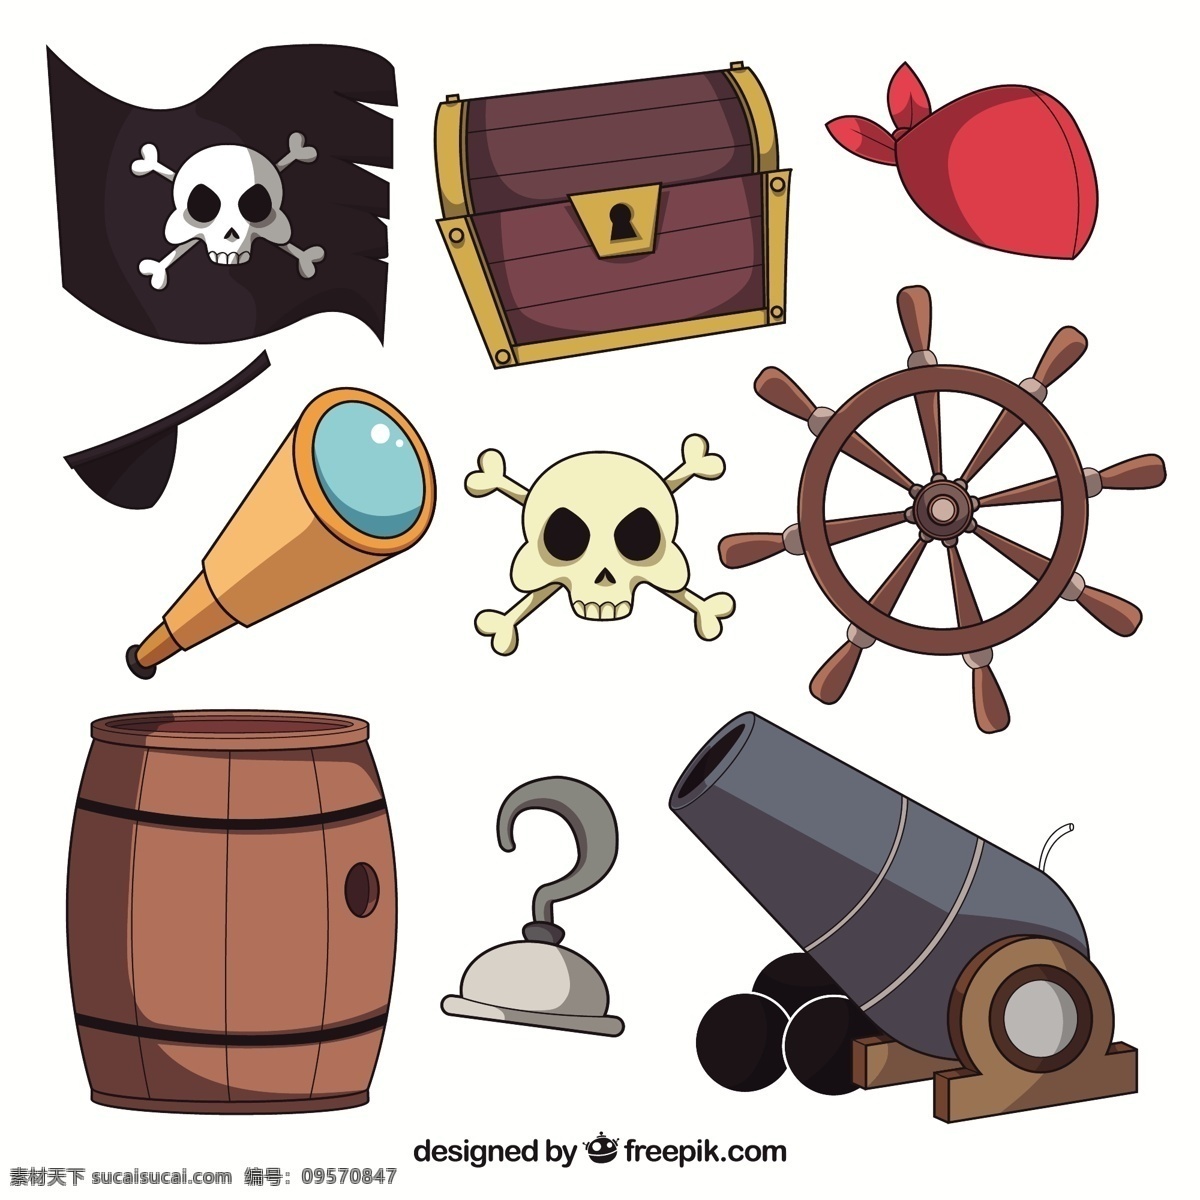 各种 海盗 元素 装饰 图标 插图 集合 海盗元素 海盗插图 海盗帽 指南针 望远镜 大炮 海盗旗 船舵 宝物箱 船锚 骷髅图